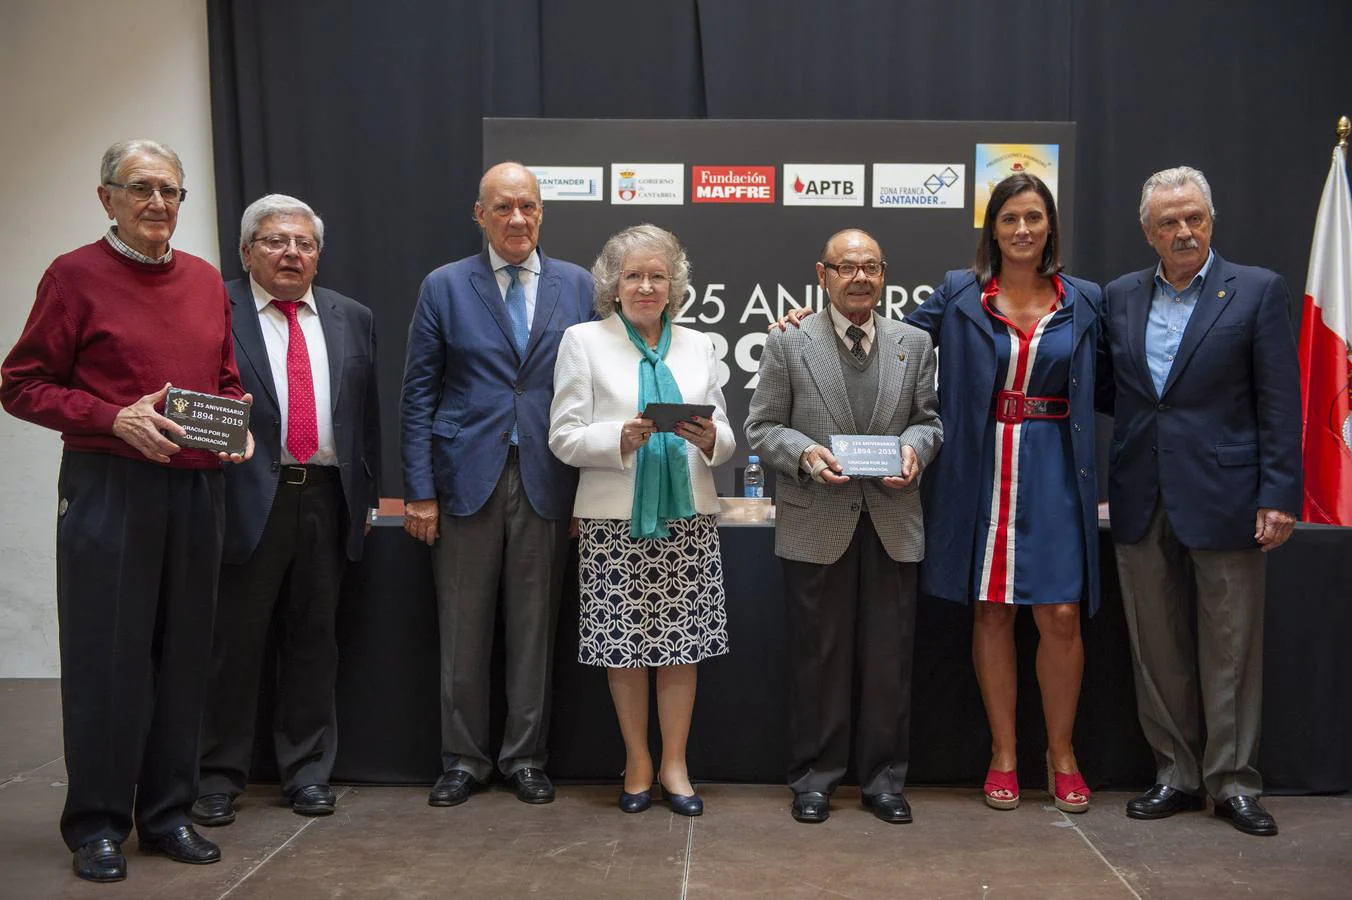 Fotos: El Real Cuerpo de Bomberos Voluntarios de Santander celebra su 125 aniversario